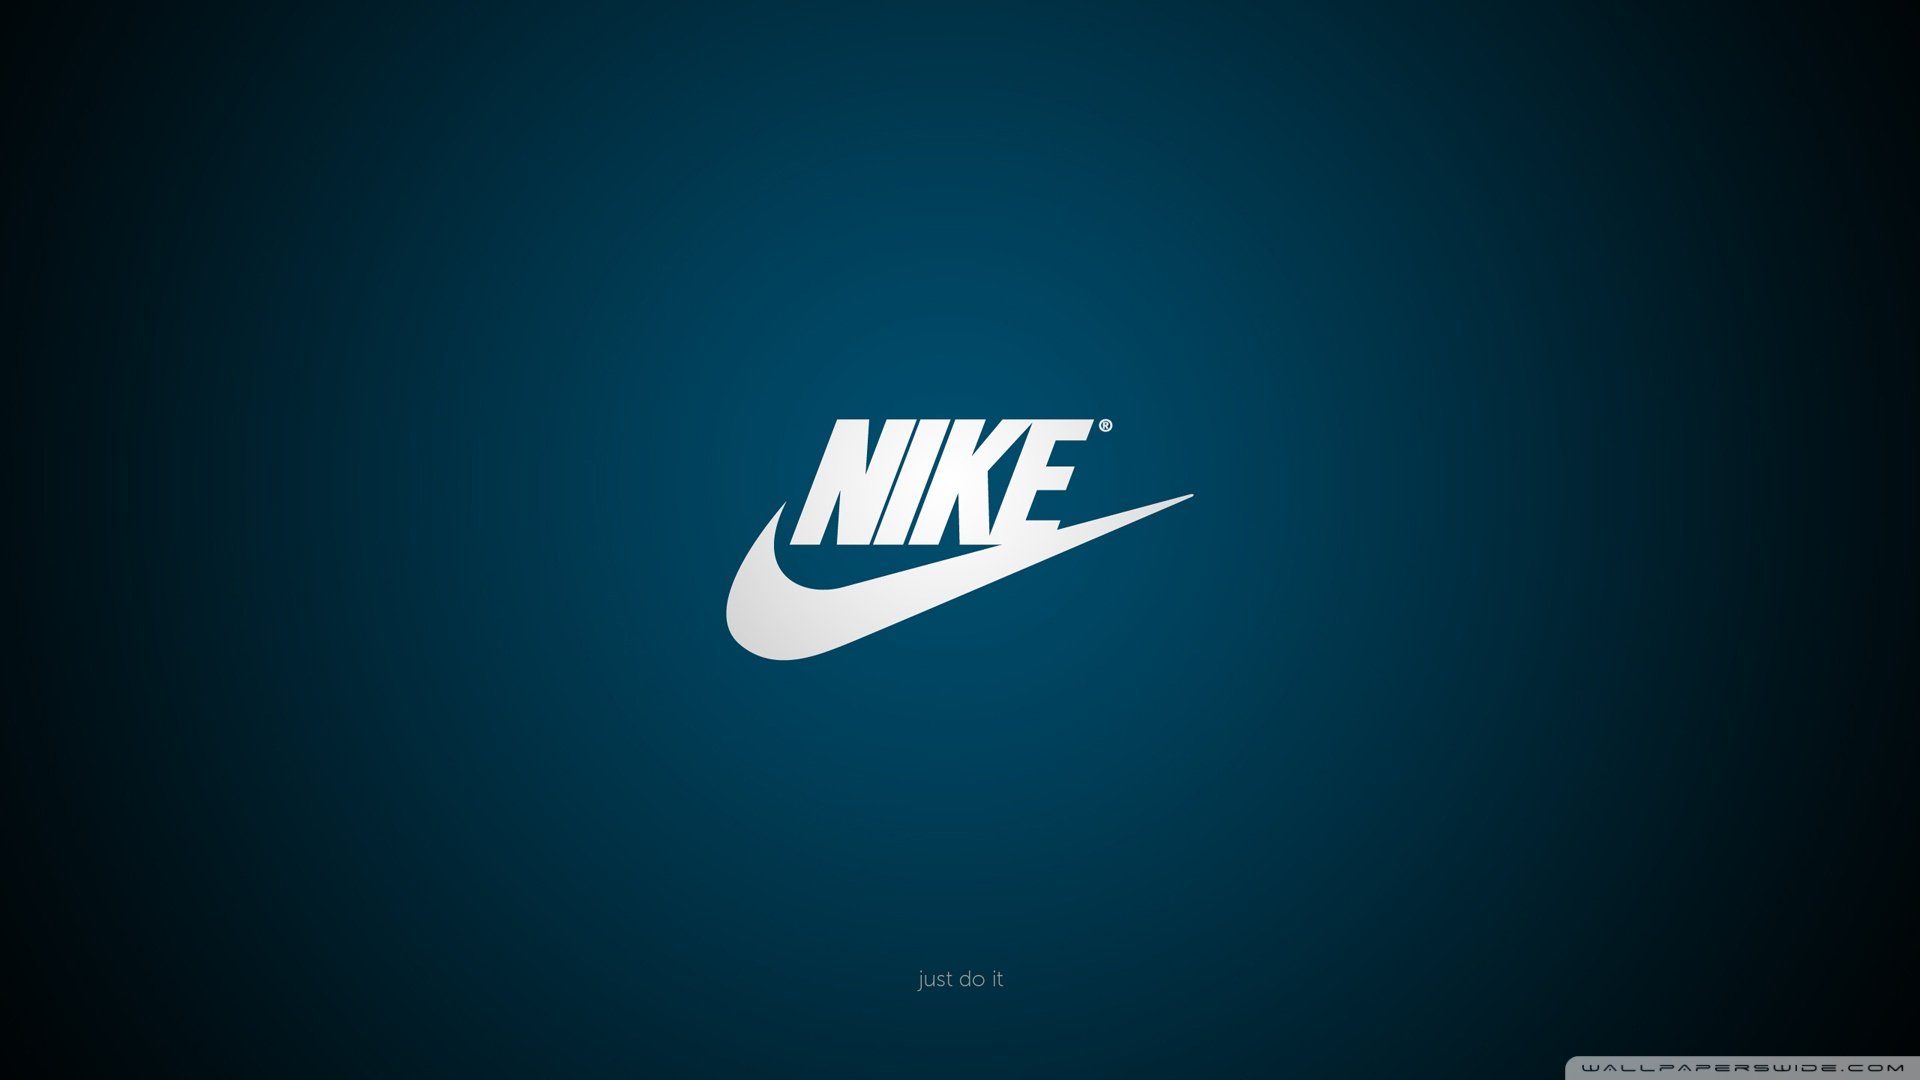  Nike logo full hd wallpaper 1080p download Full HD Wallpapers